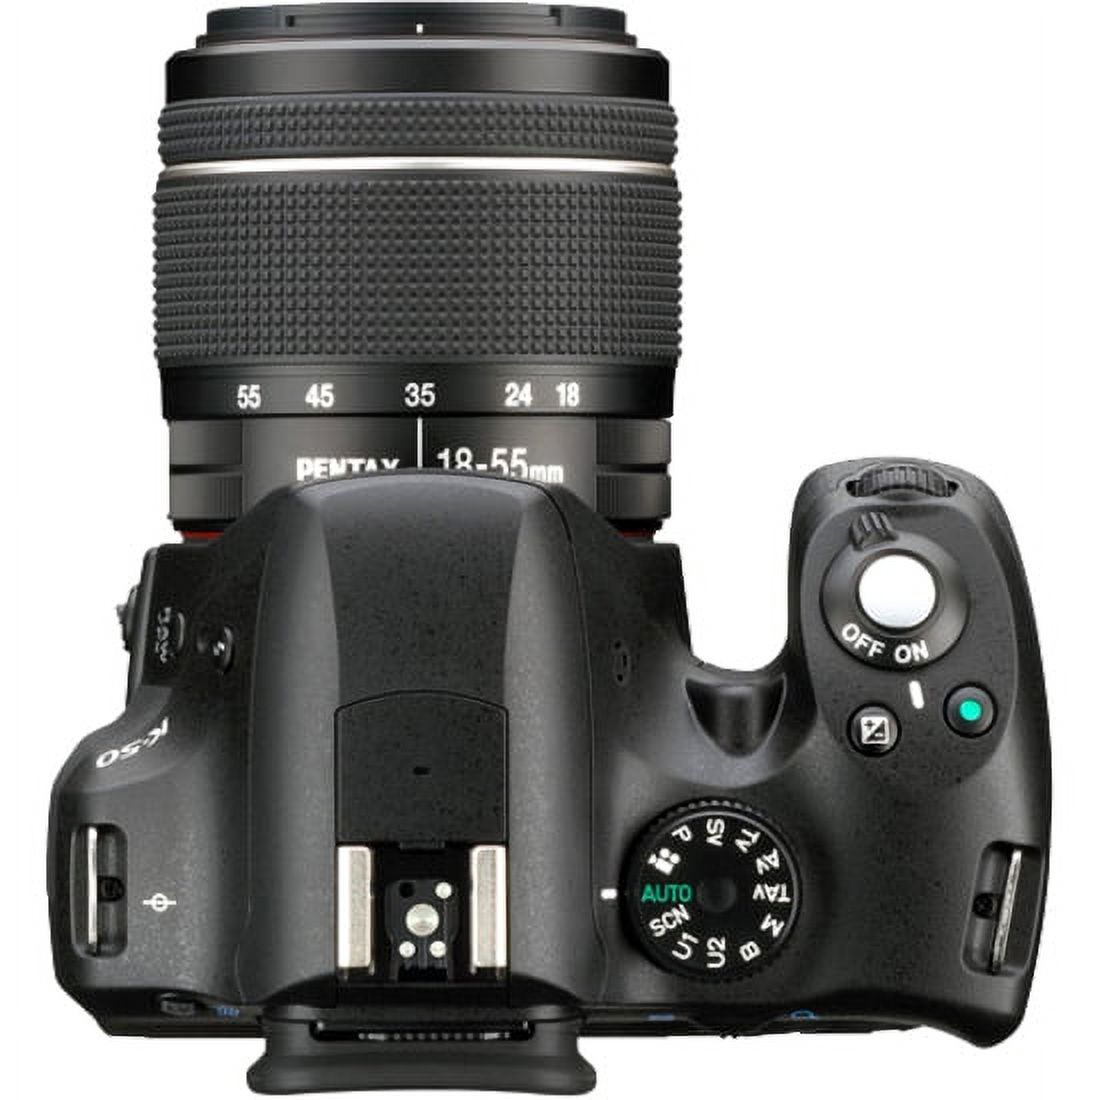 Pentax K-50 16.3 Megapixel Digital SLR Camera with Lens, 0.71", 2.17", Black - image 4 of 5